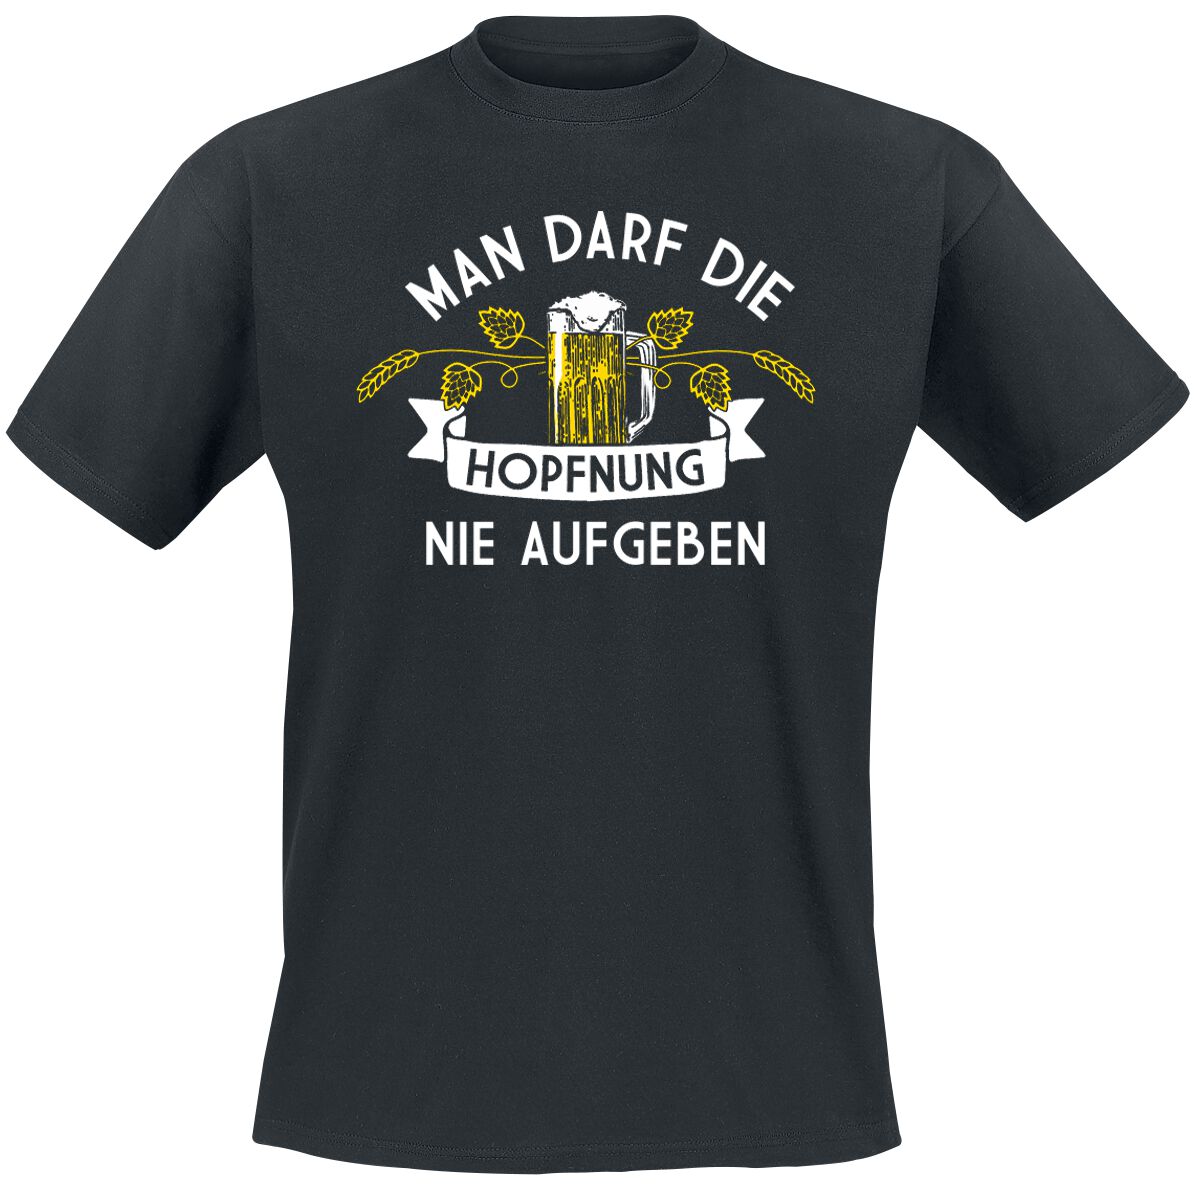 Alkohol & Party T-Shirt - Man darf die Hopfnung nie aufgeben - M bis 5XL - für Männer - Größe L - schwarz